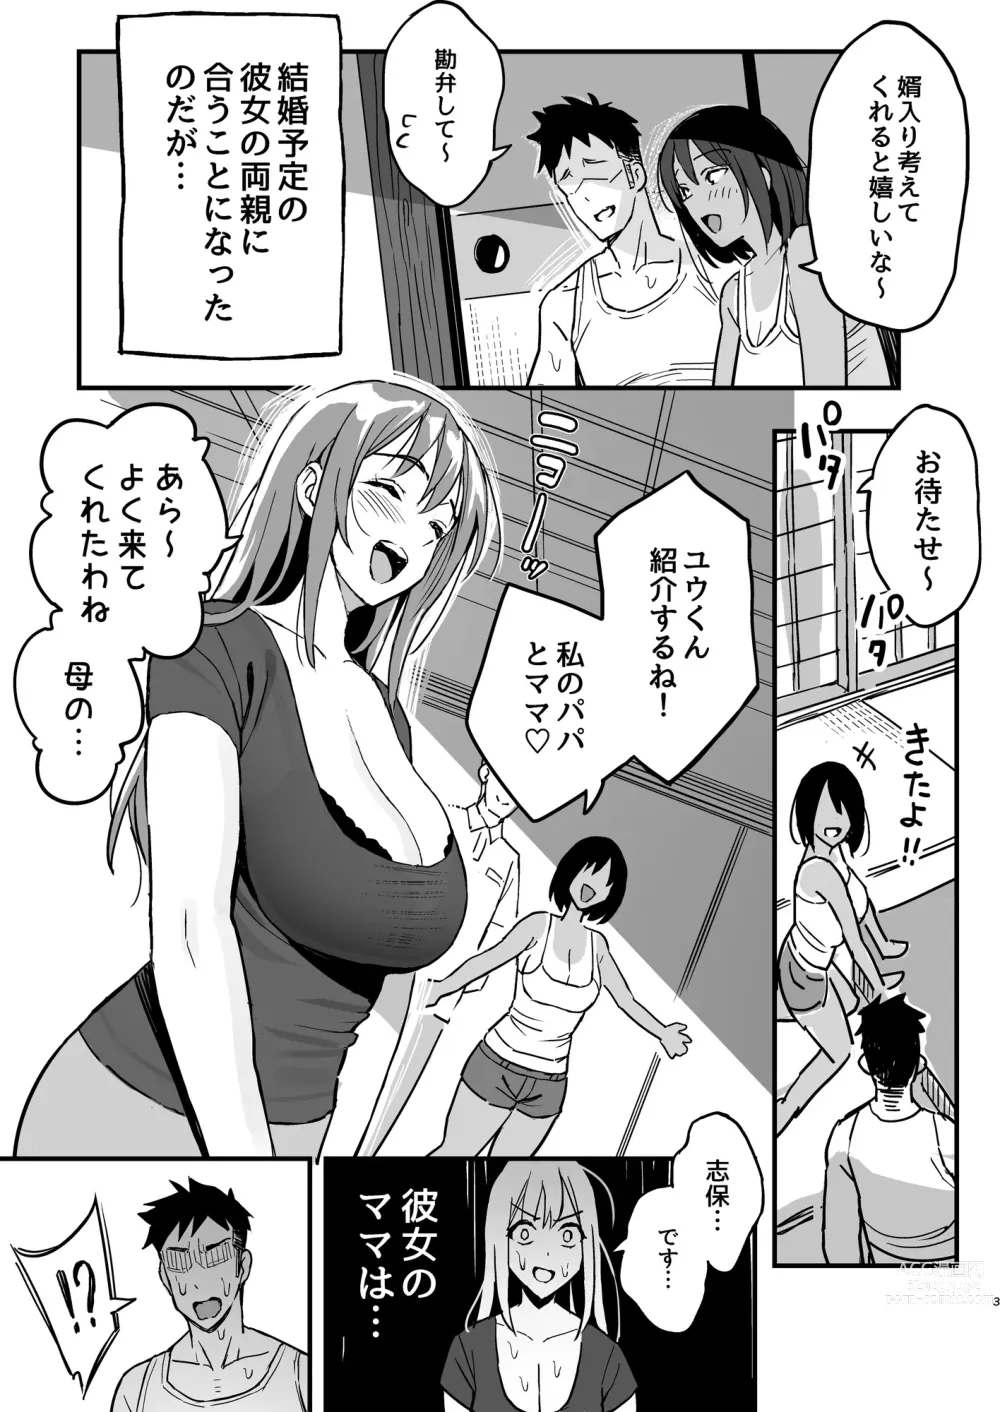 Page 2 of doujinshi Kanojo no mama wa mama katsu no mamadatta.